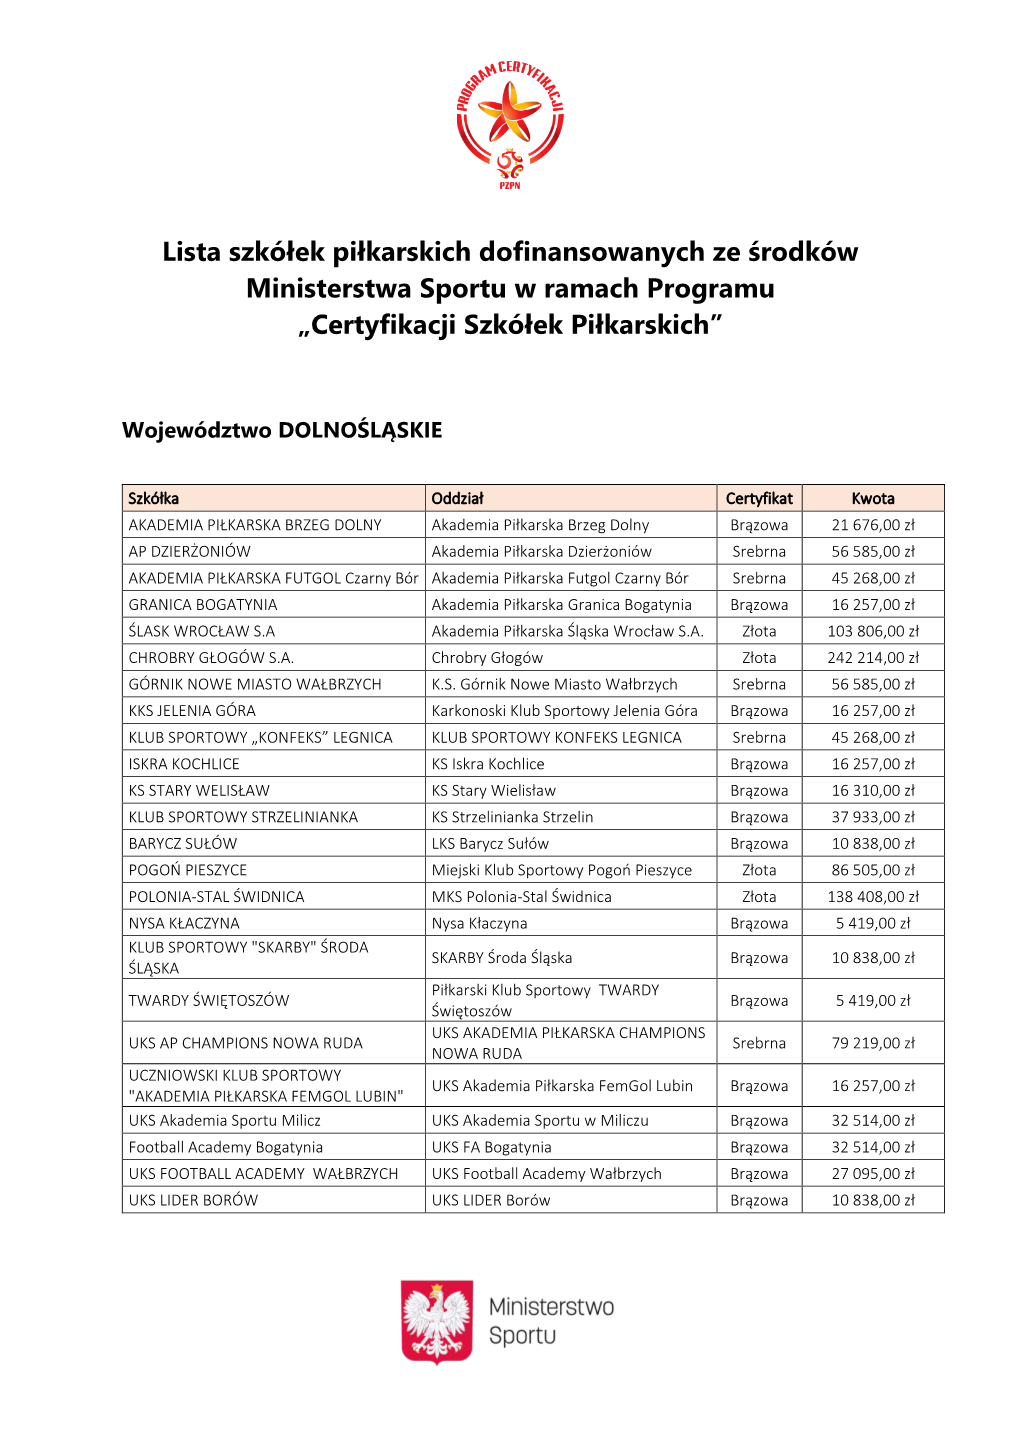 Lista Szkółek Piłkarskich Dofinansowanych Ze Środków Ministerstwa Sportu W Ramach Programu „Certyfikacji Szkółek Piłkarskich”